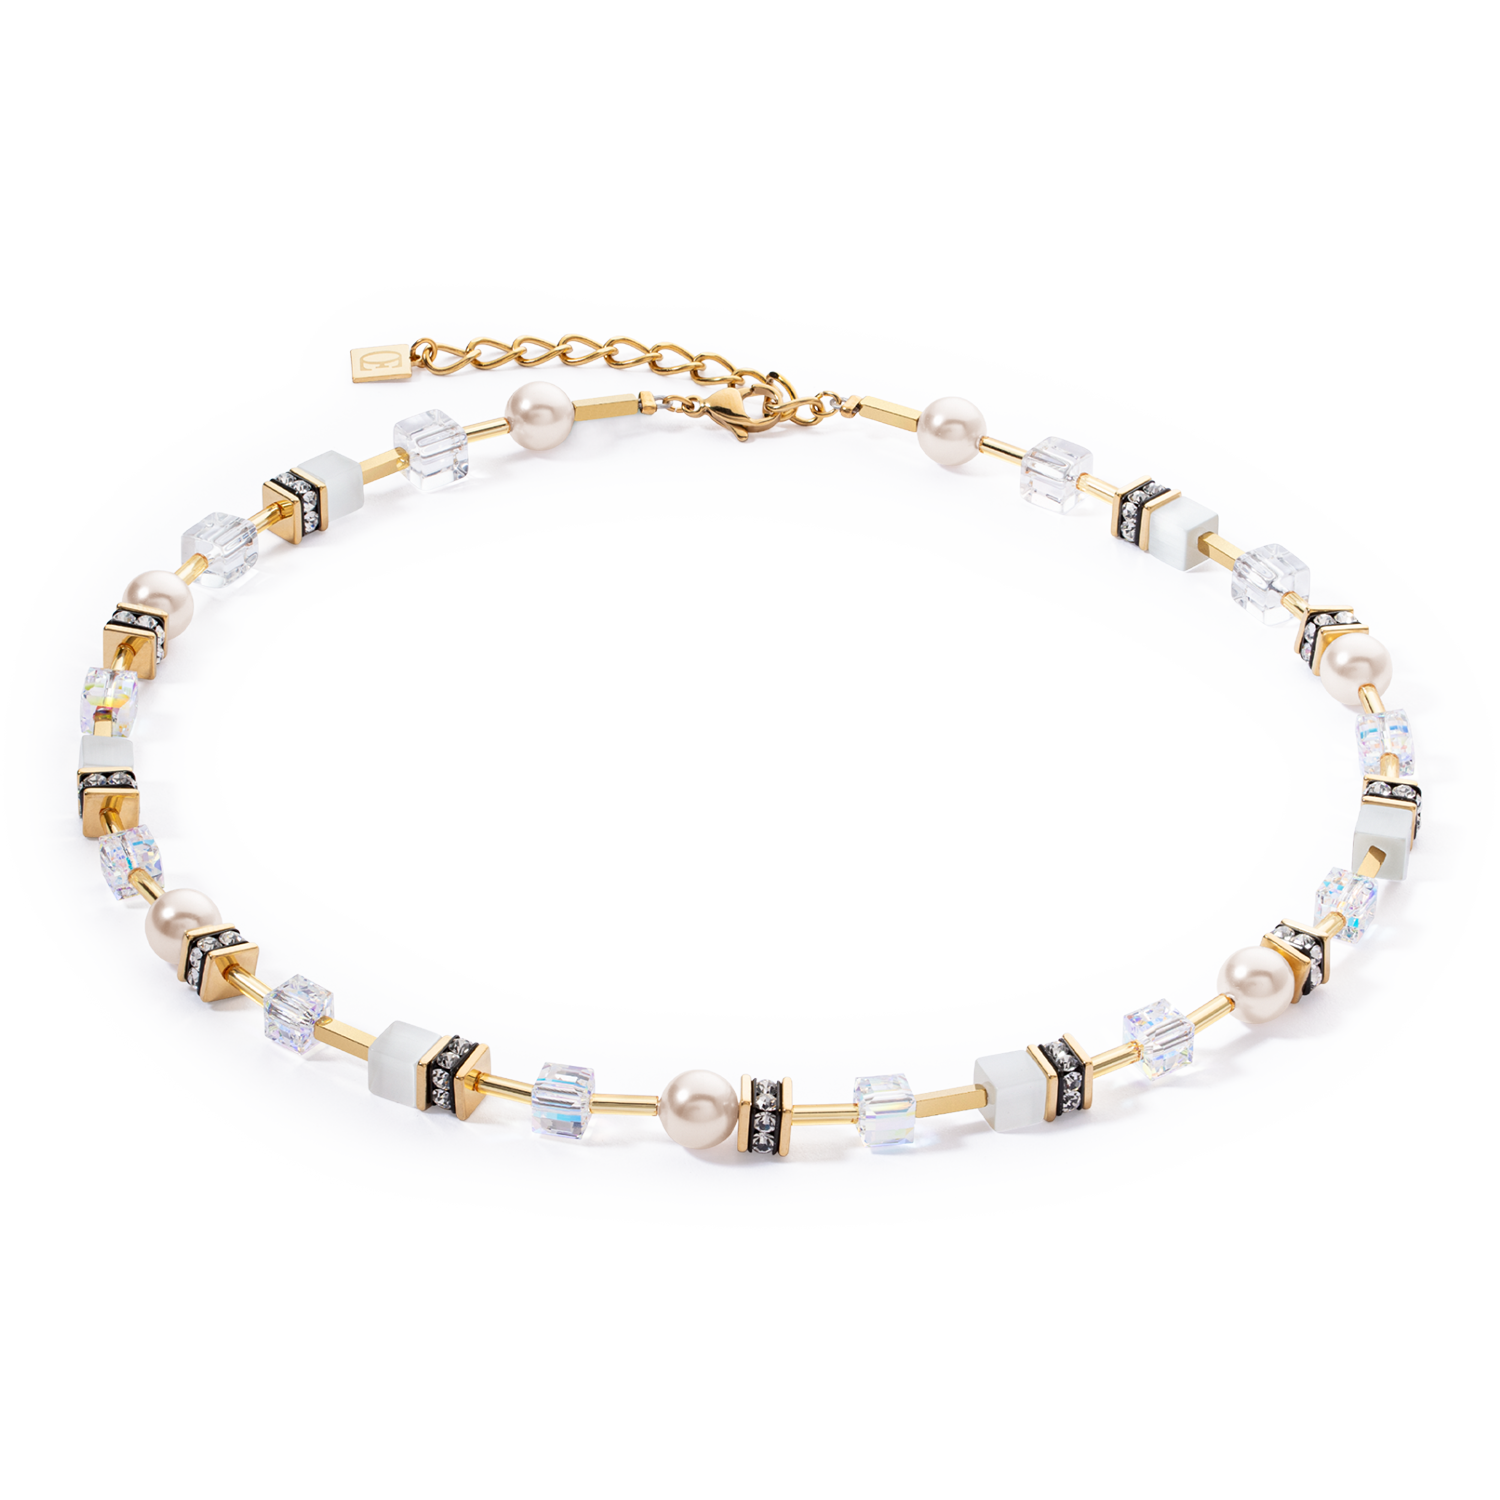 Kollektion 4081 – Weißgold – Halskette – Löwenherz 